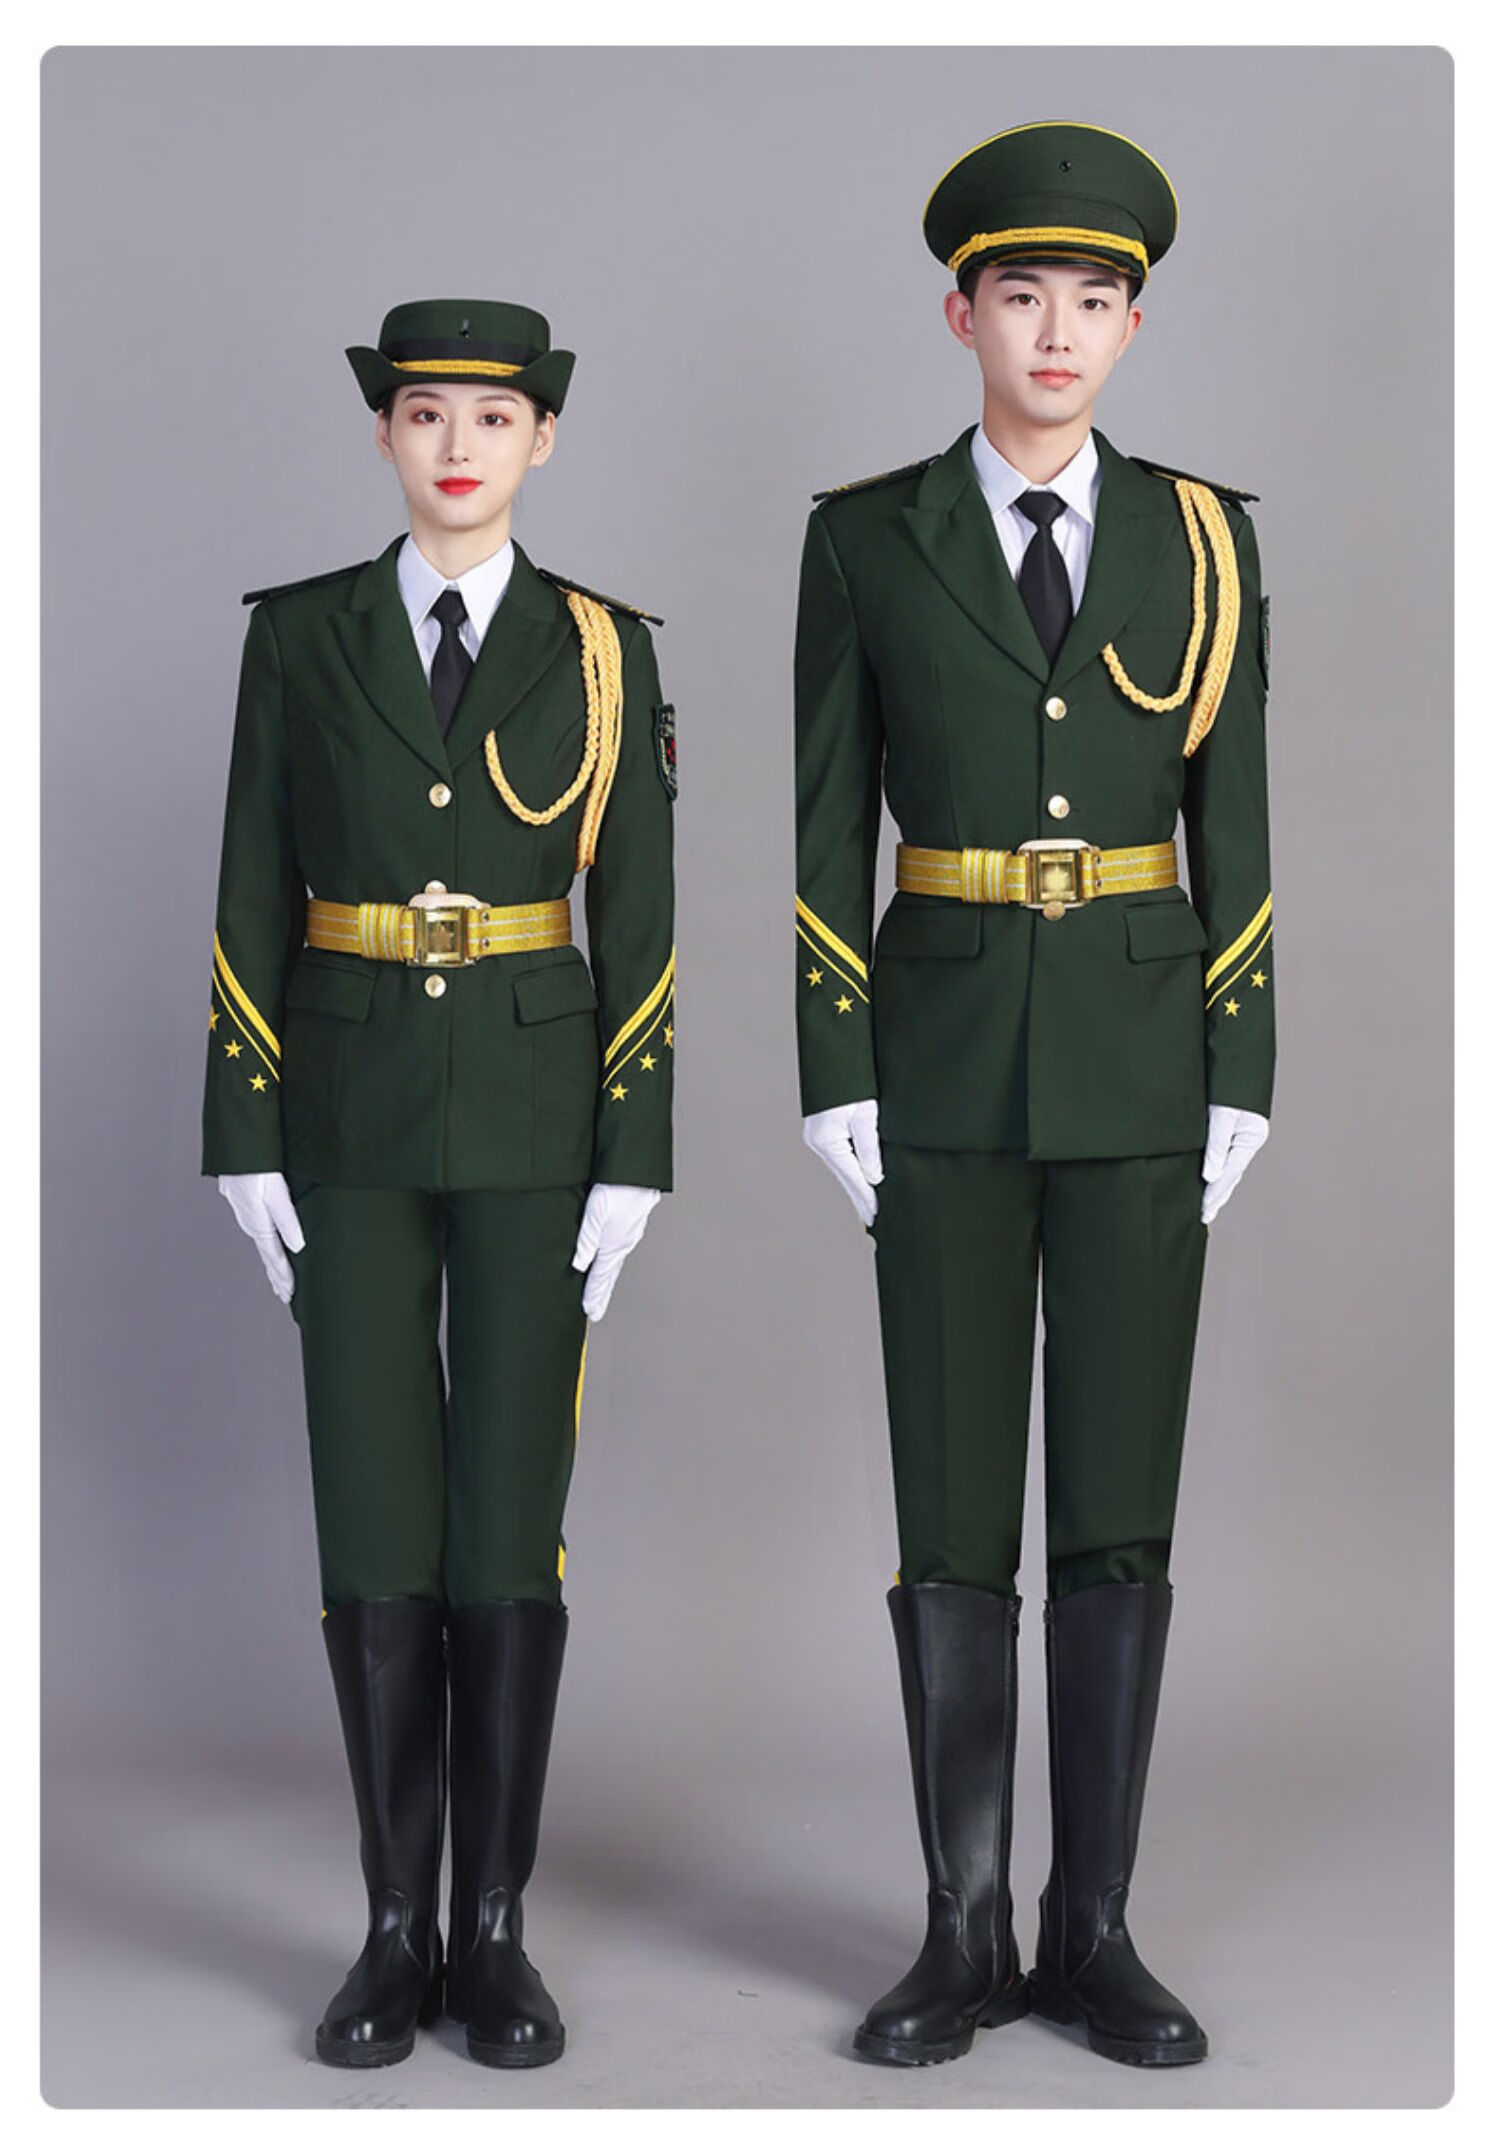 国旗护卫队的服装图片